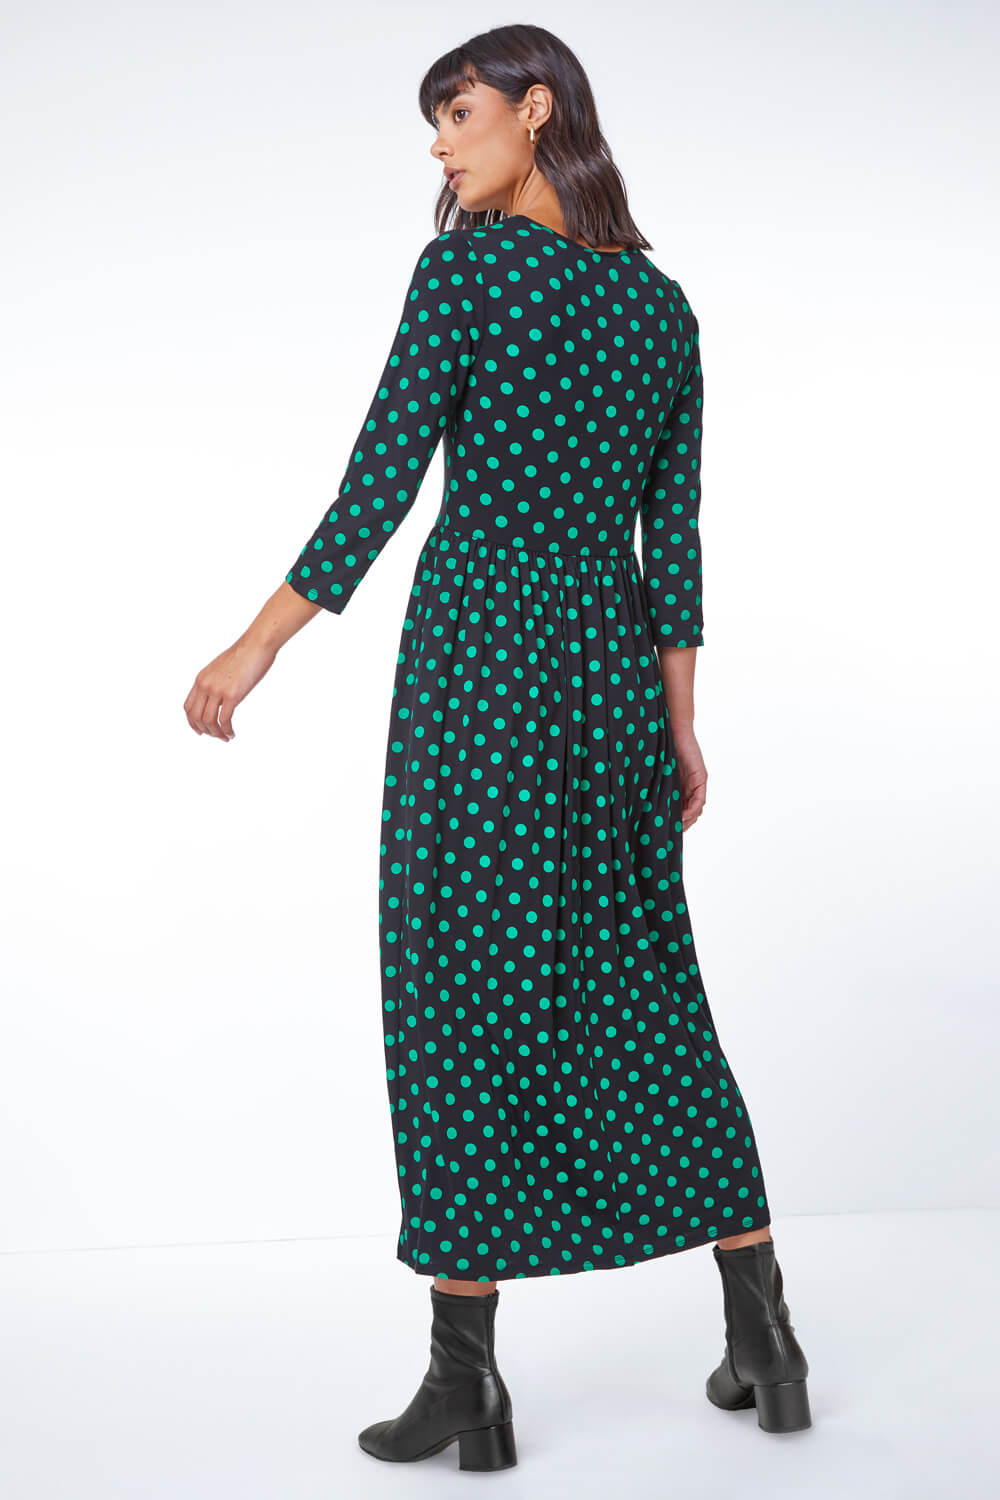 Spot Print Gathered Skirt Midi Stretch Dress in Green - Roman Originals UK